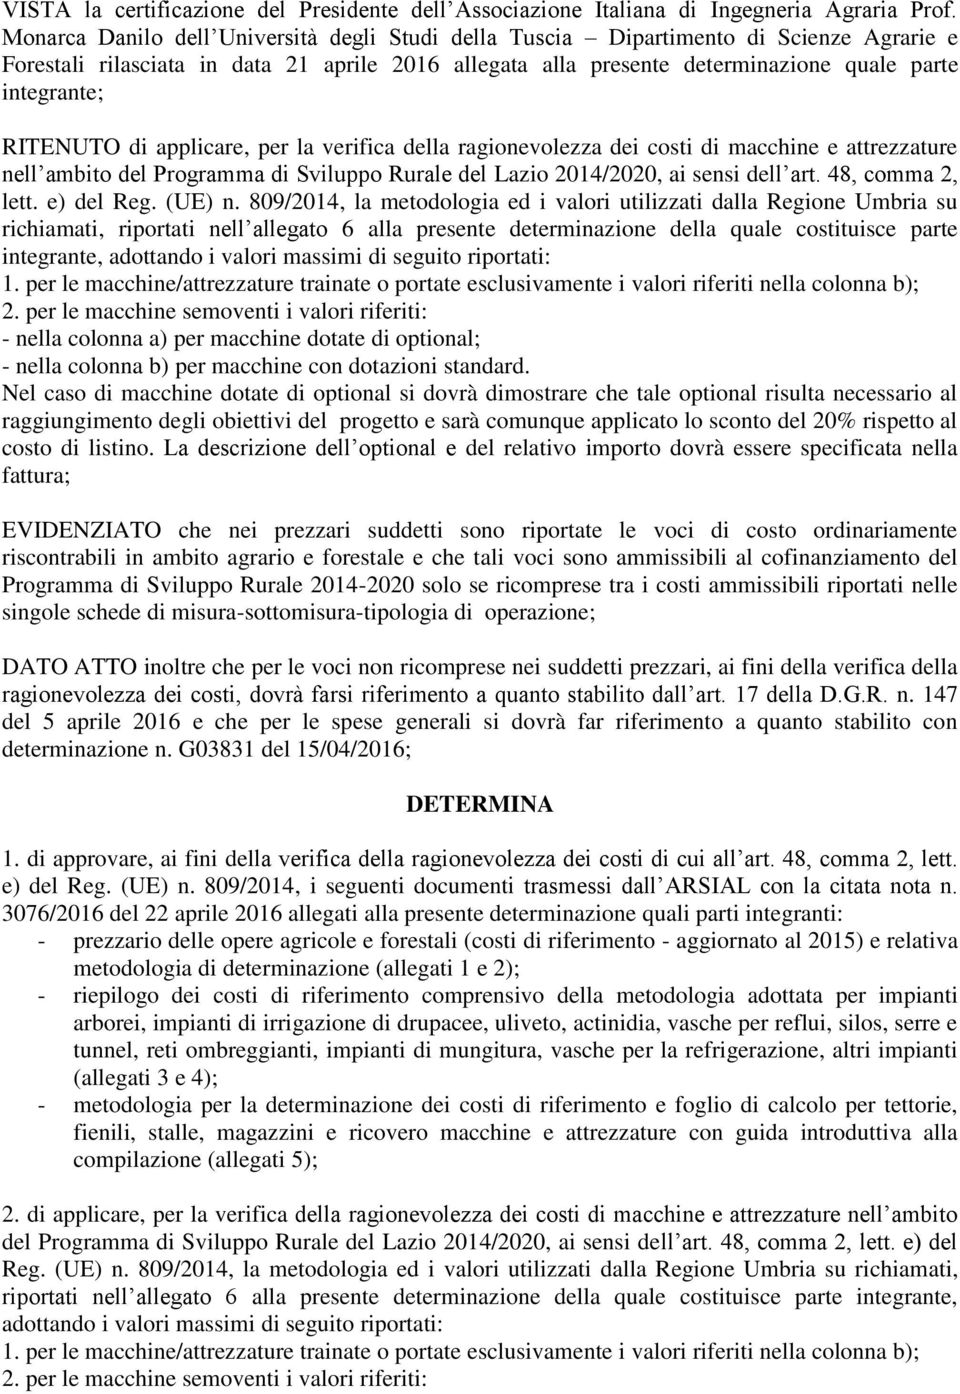 RITENUTO di applicare, per la verifica della ragionevolezza dei costi di macchine e attrezzature nell ambito del Programma di Sviluppo Rurale del Lazio 2014/2020, ai sensi dell art. 48, comma 2, lett.